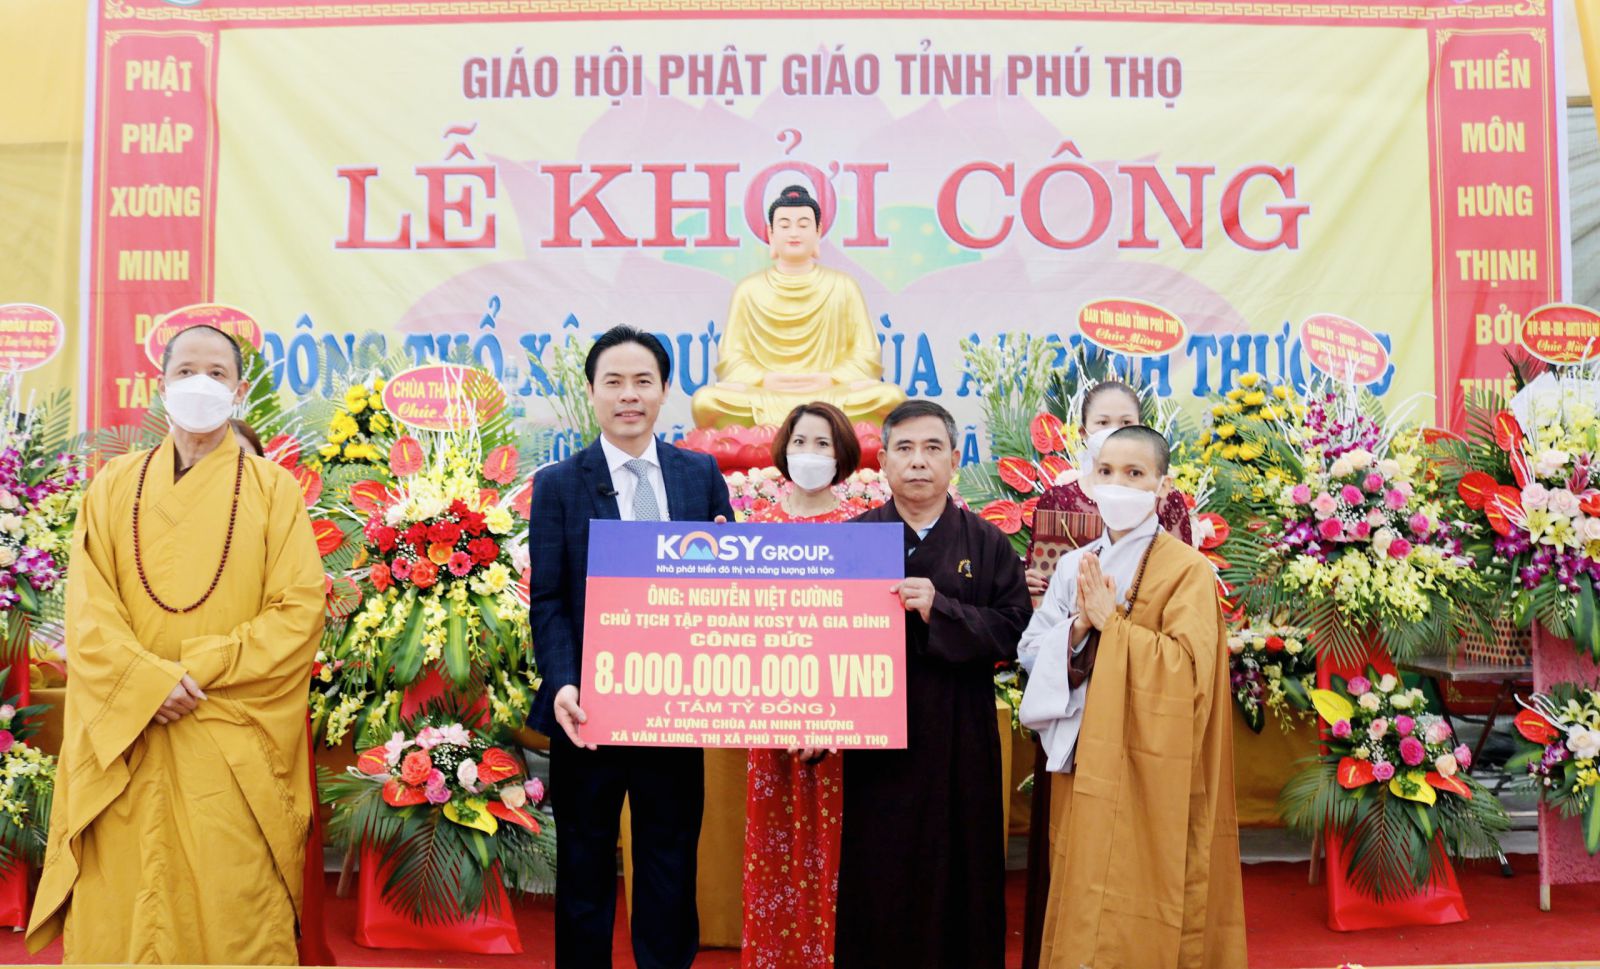 Ông Nguyễn Việt cường - Chủ tịch Tập đoàn Kosy và gia đình công đứcp/8 tỷ đồng xây dựng chùa An Ninh Thượng.